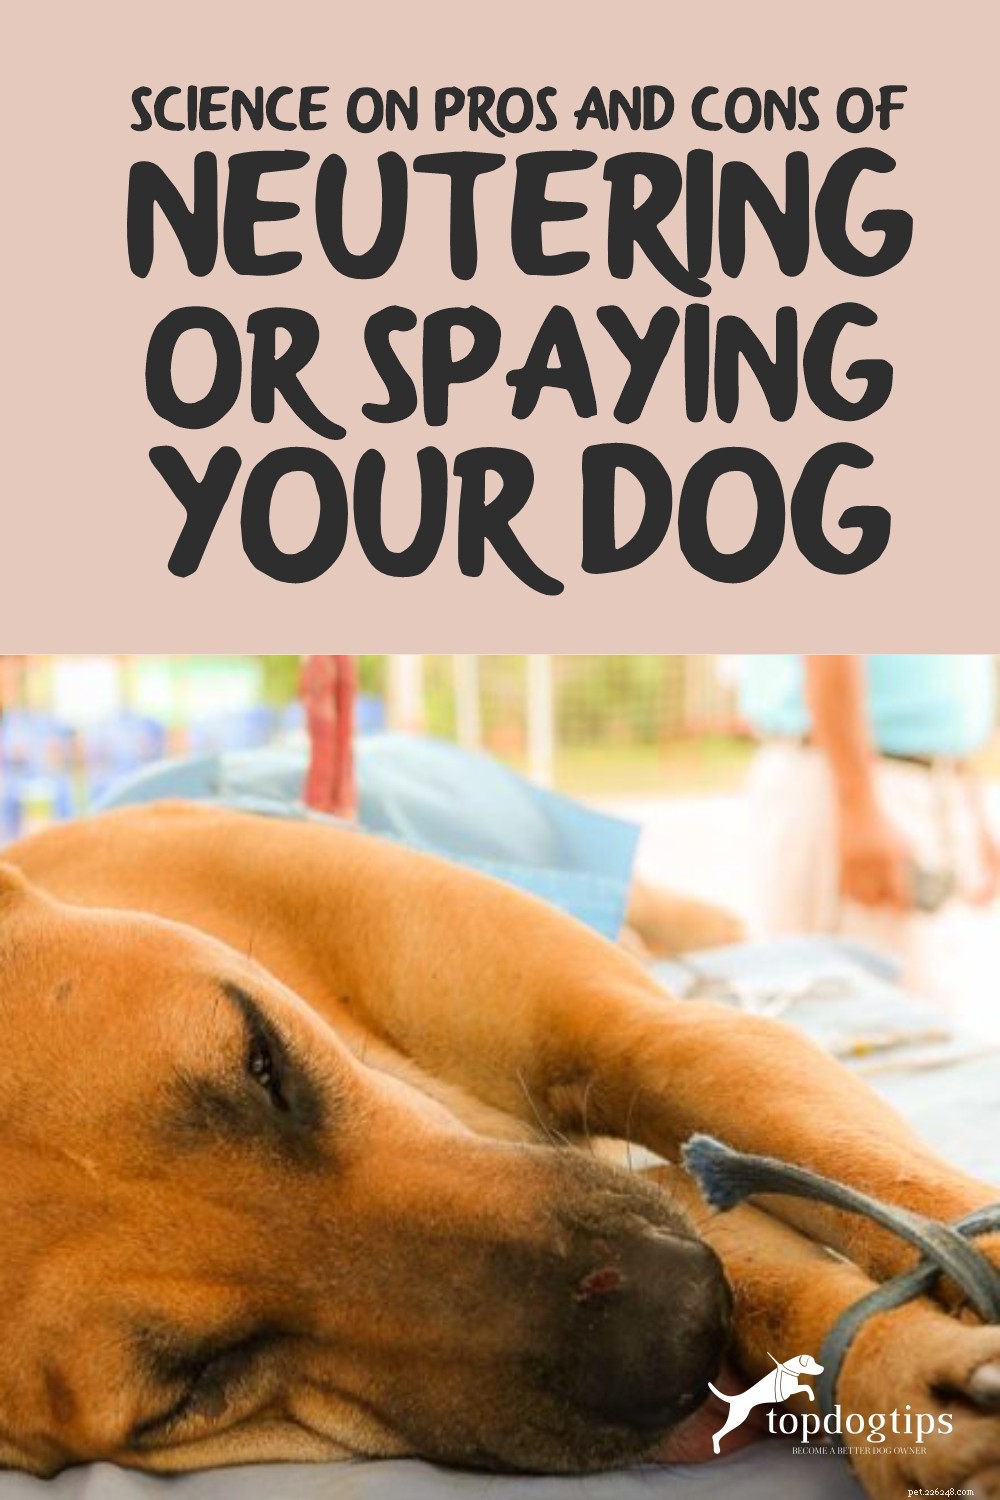 Cancellare o sterilizzare un cane:pro e contro (supportato dalla scienza)